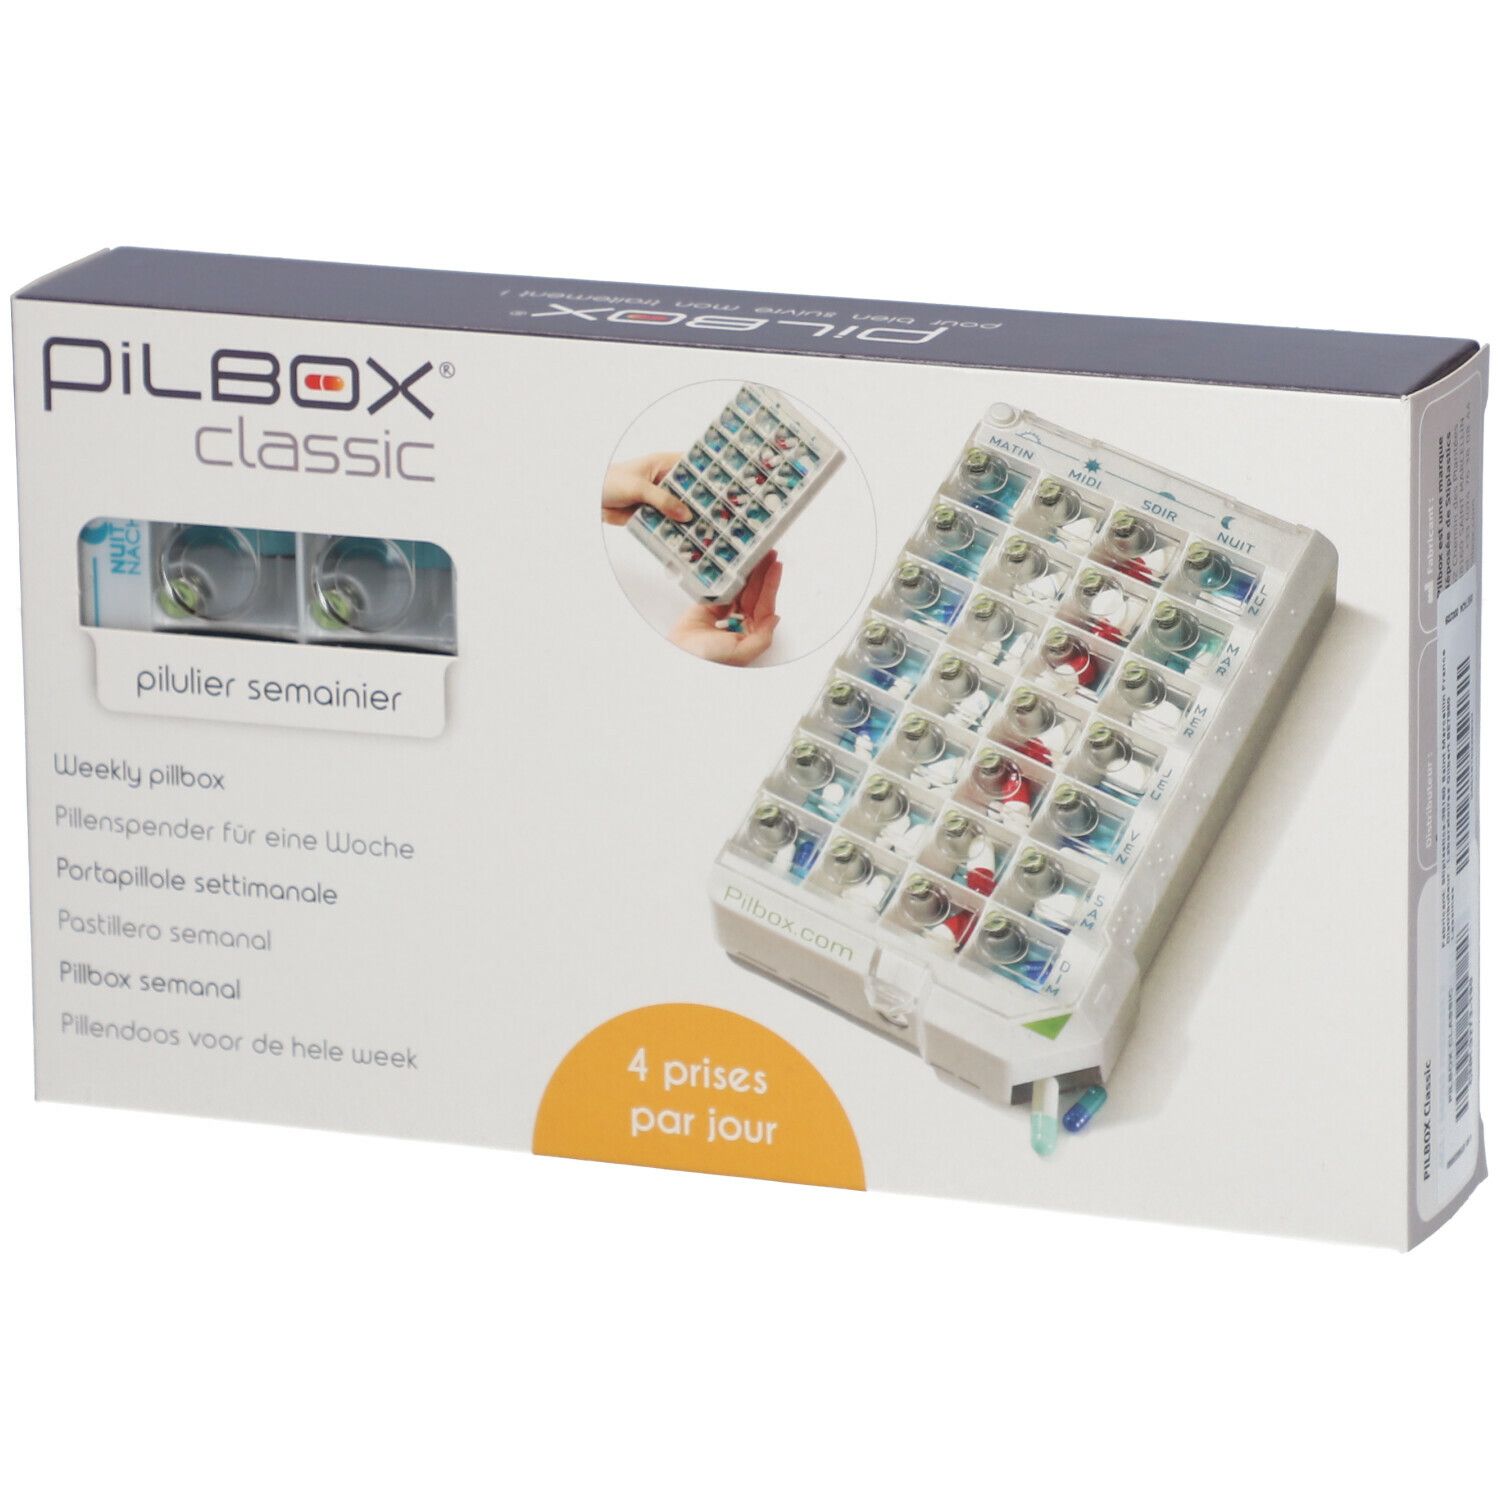 Pilbox® Classic Pilulier semainier